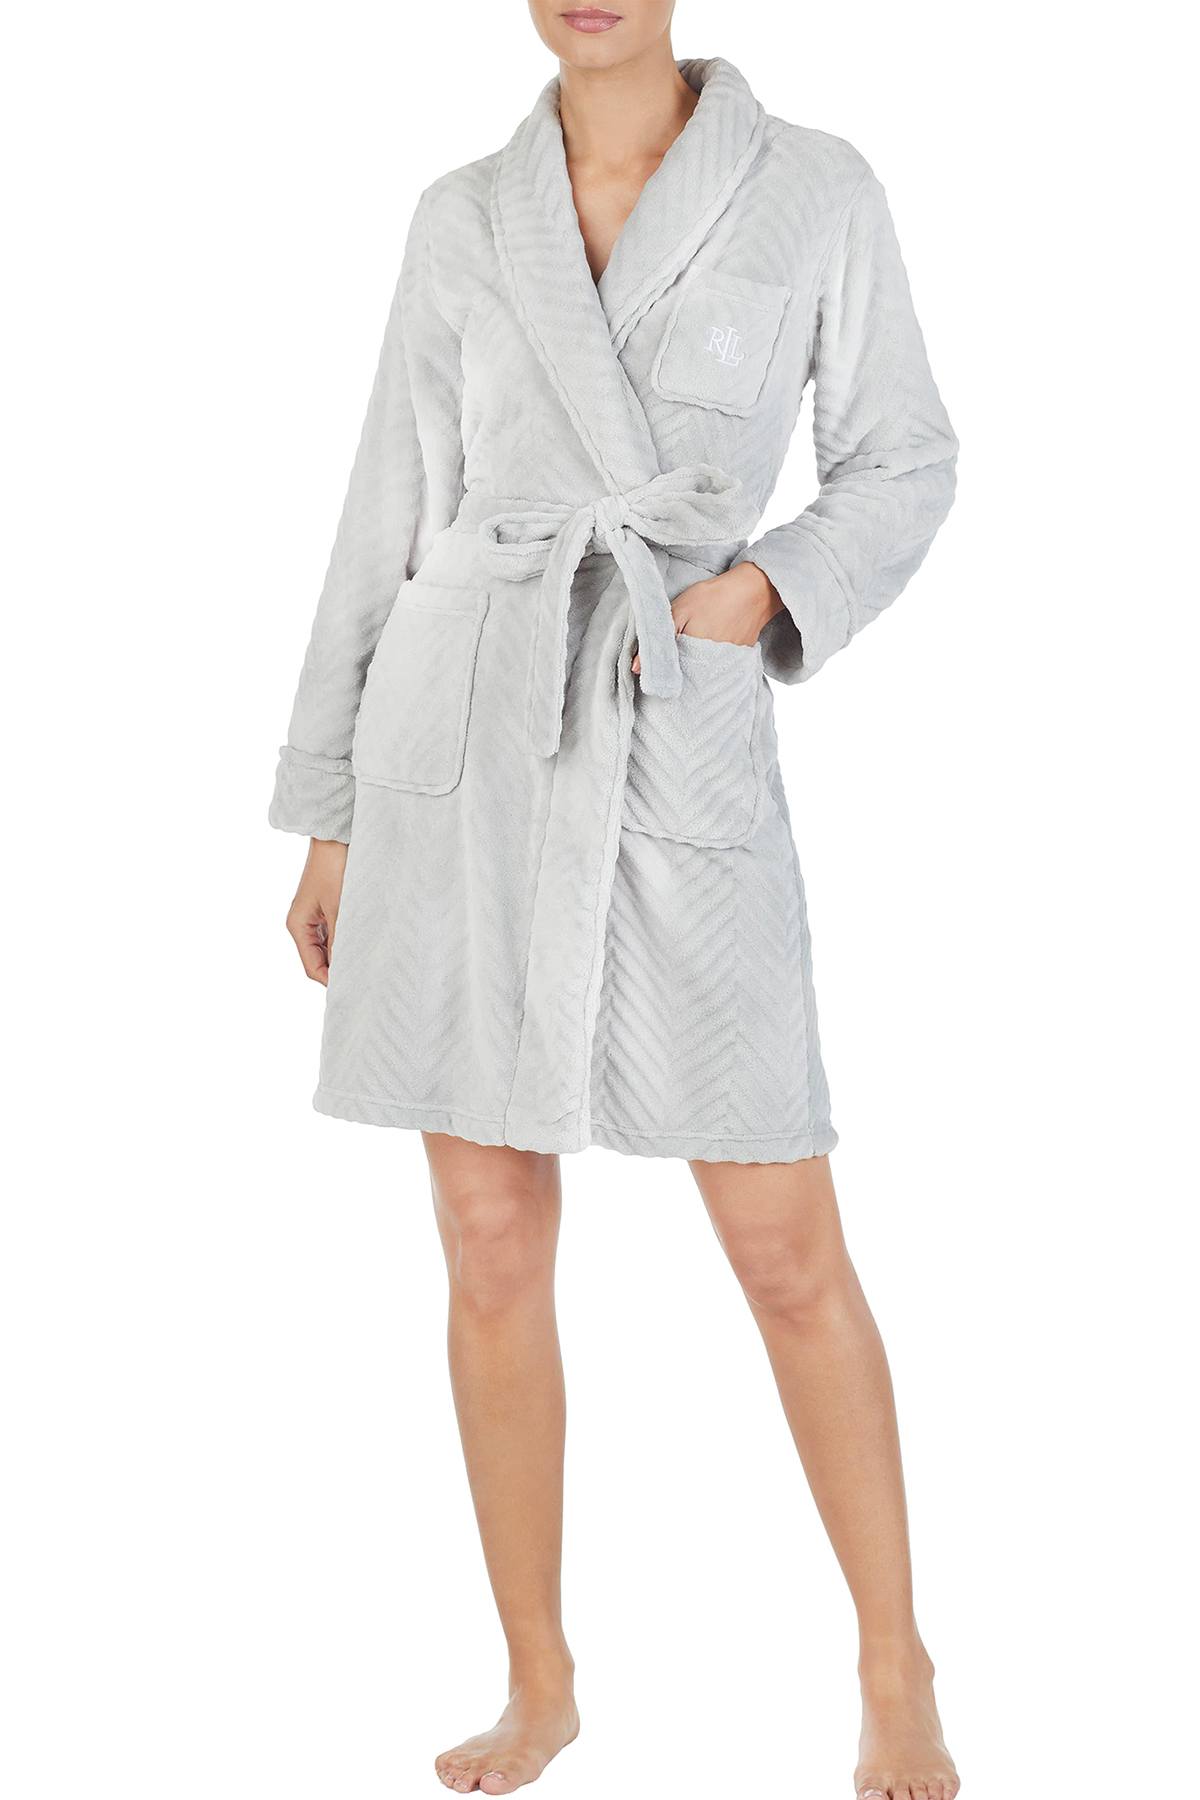 Lauren Ralph Lauren Grey Shawl-Collar Fleece Short Robe